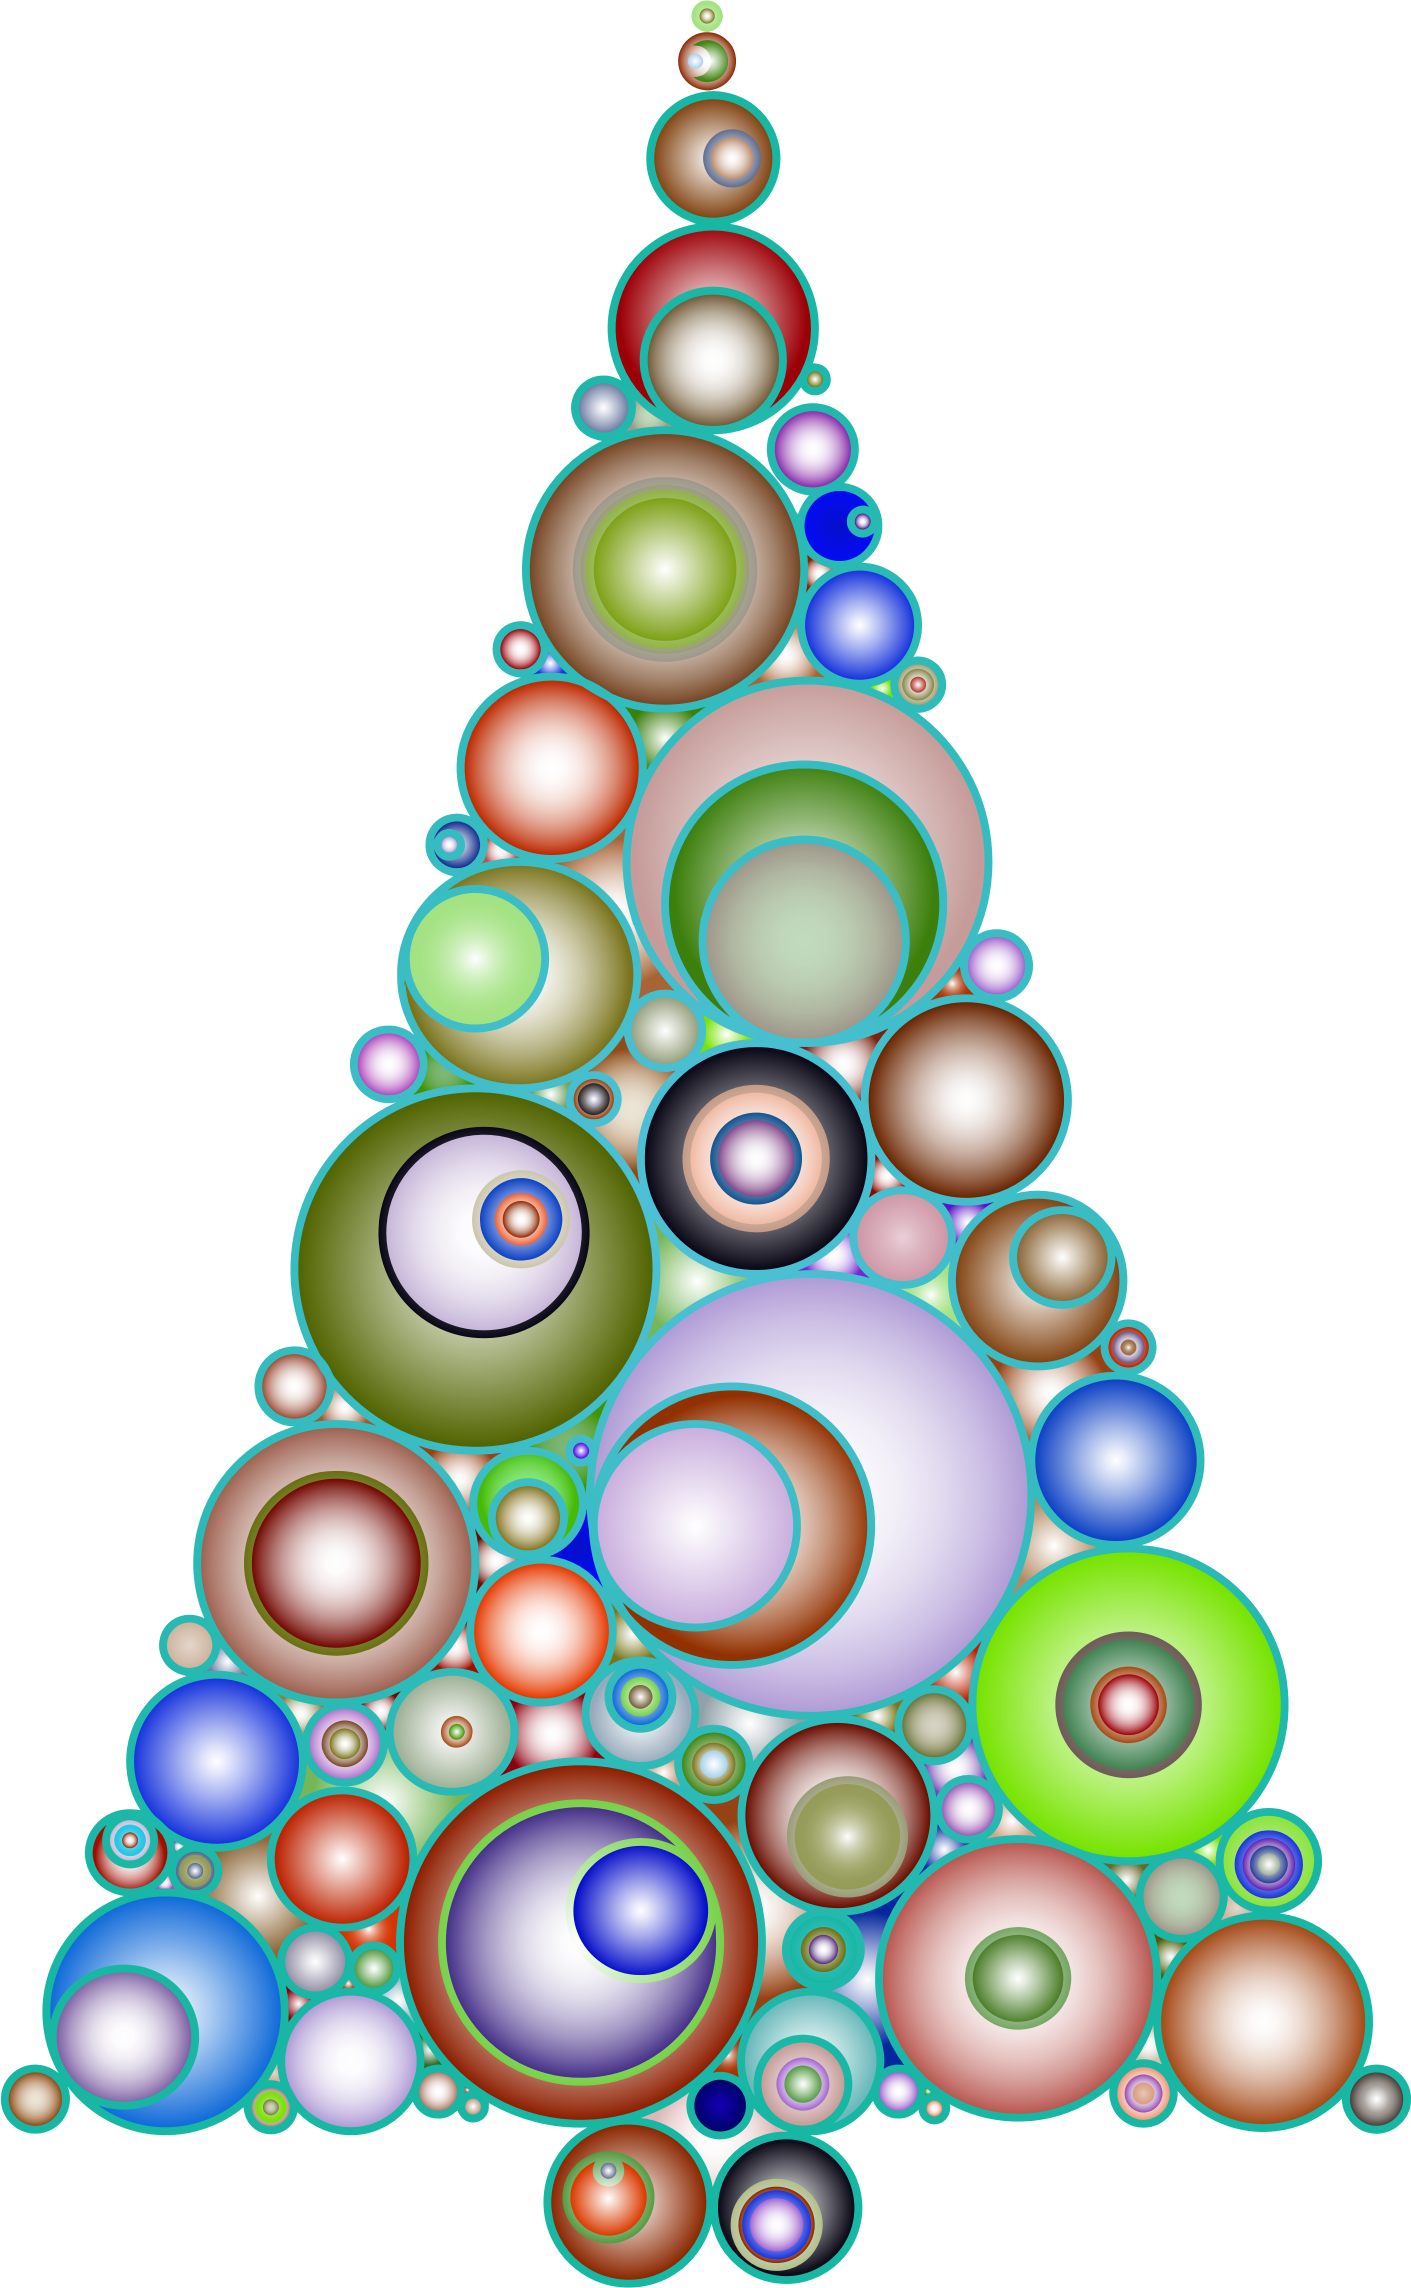 Abstract Circles Christmas Tree 4 - Christmas Tree (1411x2288)